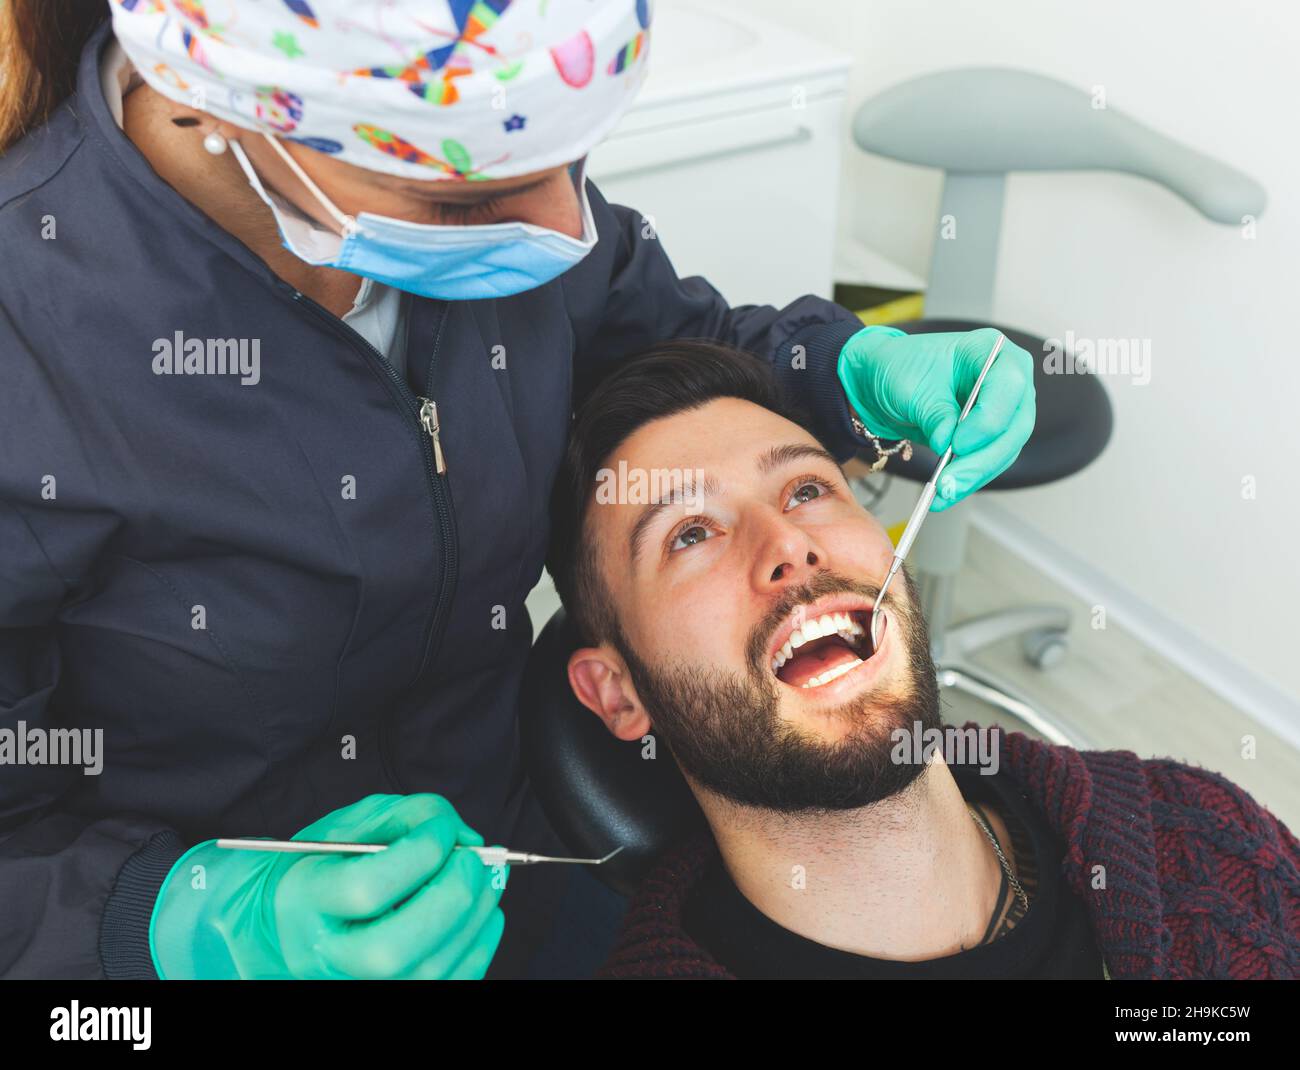 Dentista femenino examina a un paciente hombre en un consultorio dental usando herramientas profesionales y equipo de protección personal. Foto de stock